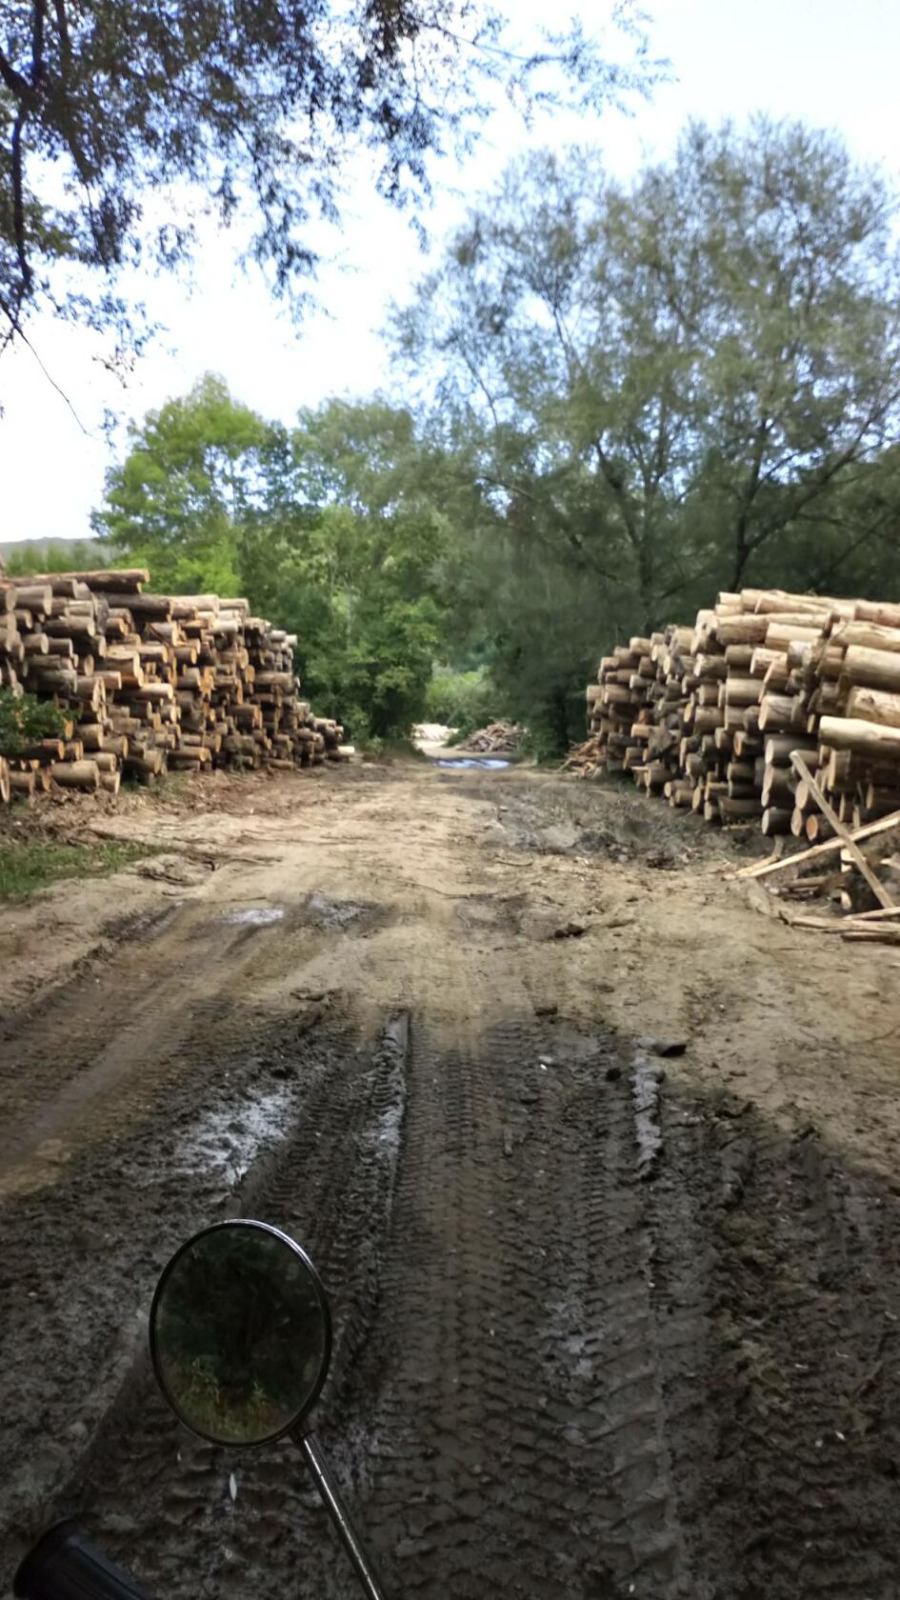 В Северском районе Кубани черные лесорубы уничтожают кубометры древесины